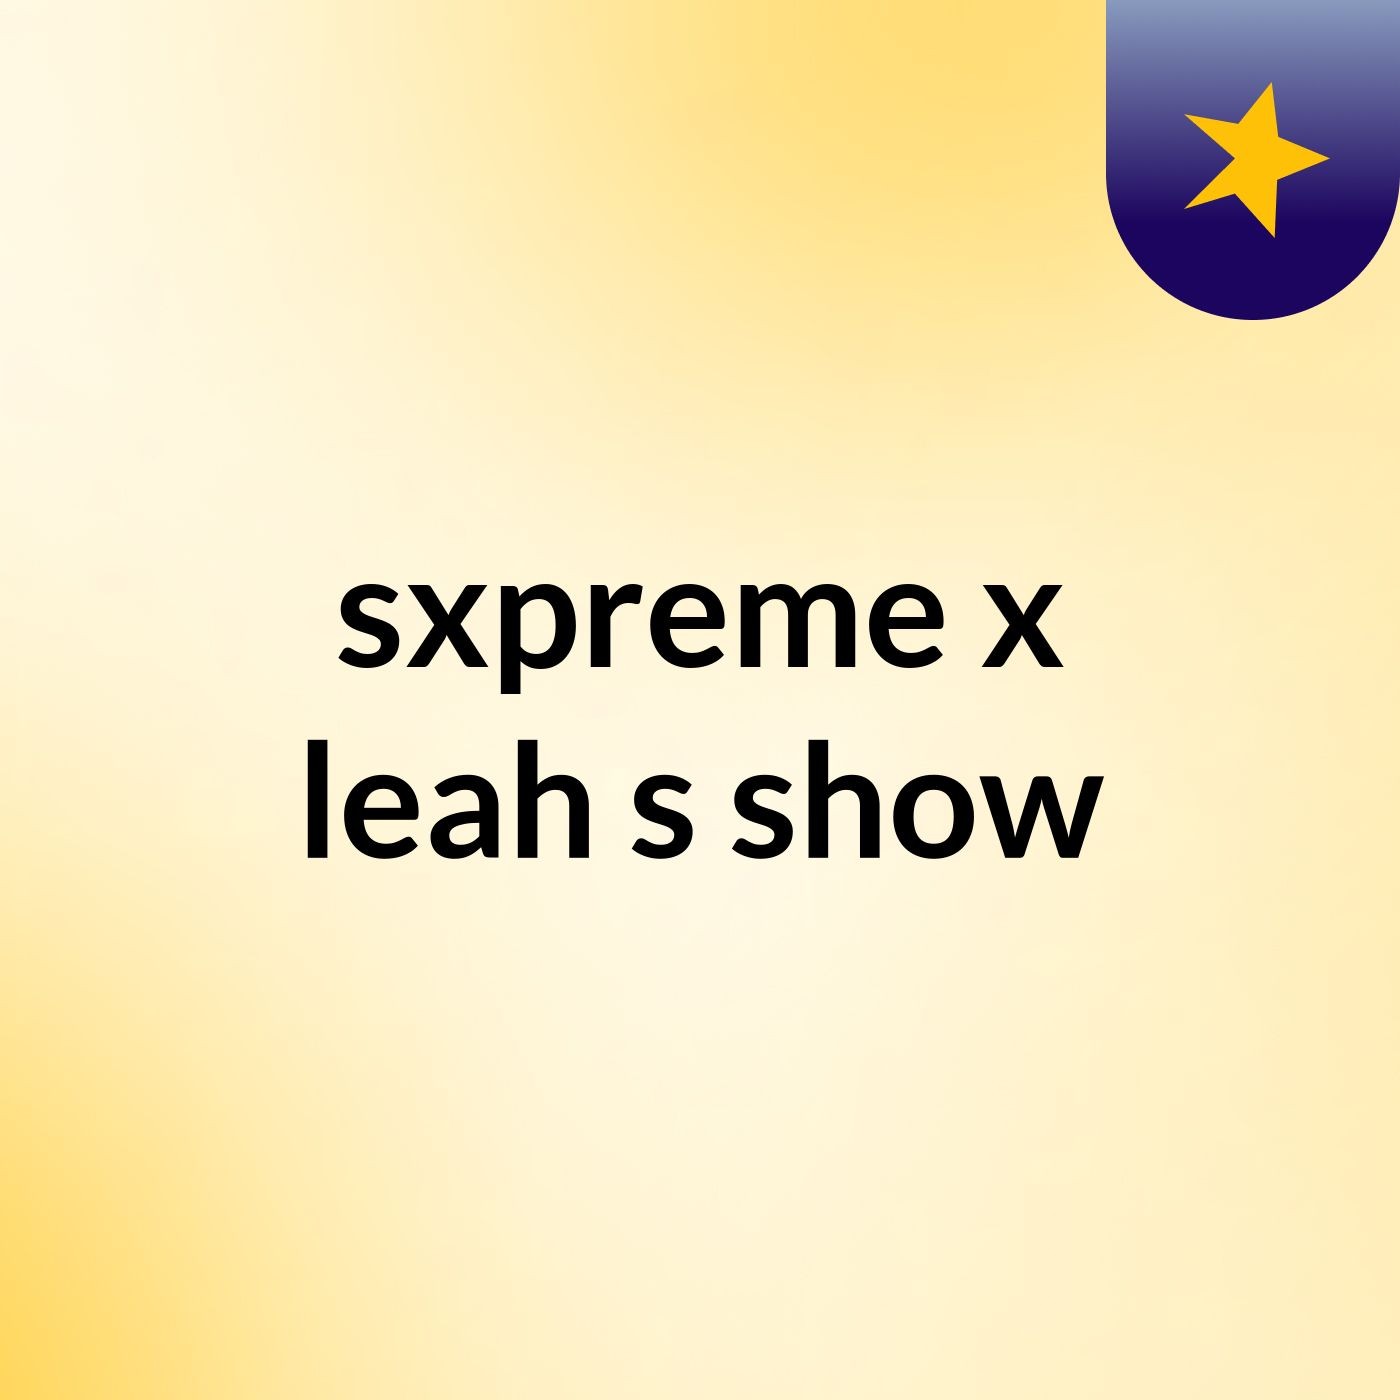 Episode 3 - sxpreme x leah's show